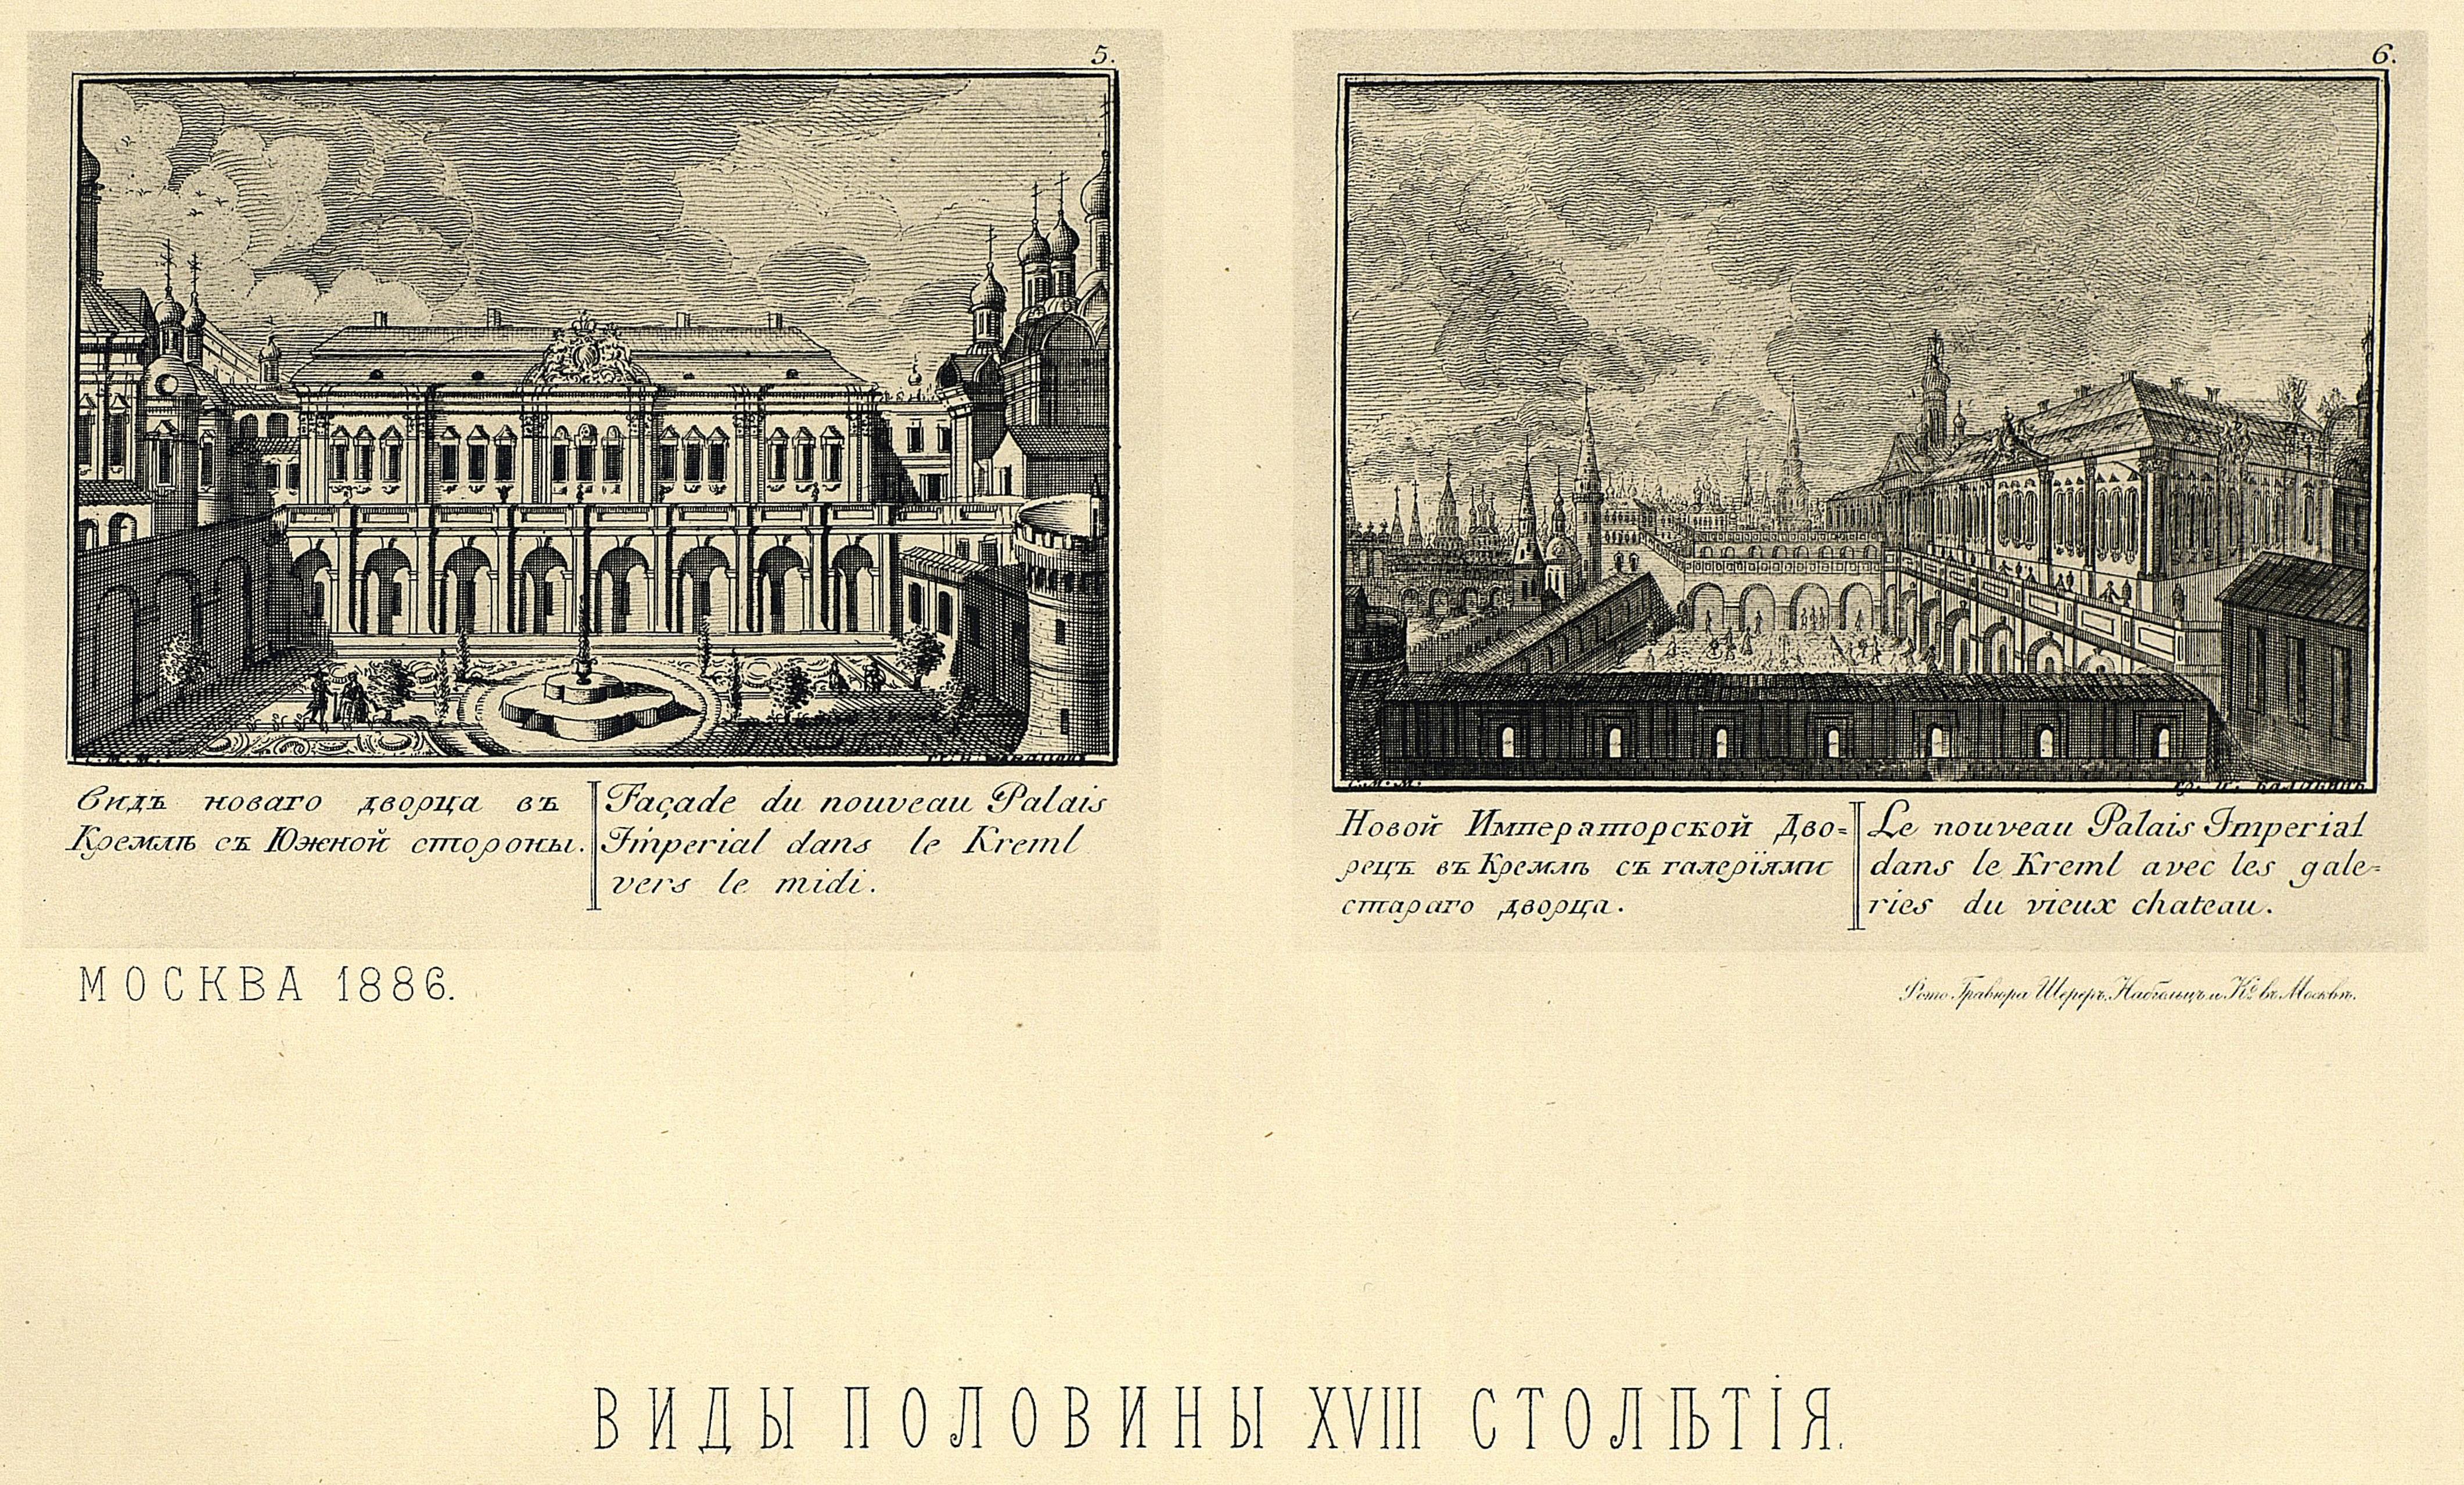 5) Вид нового дворца в Кремле с южной стороны. 6) Новый Императорский дворец в Кремле с галереями старого дворца.